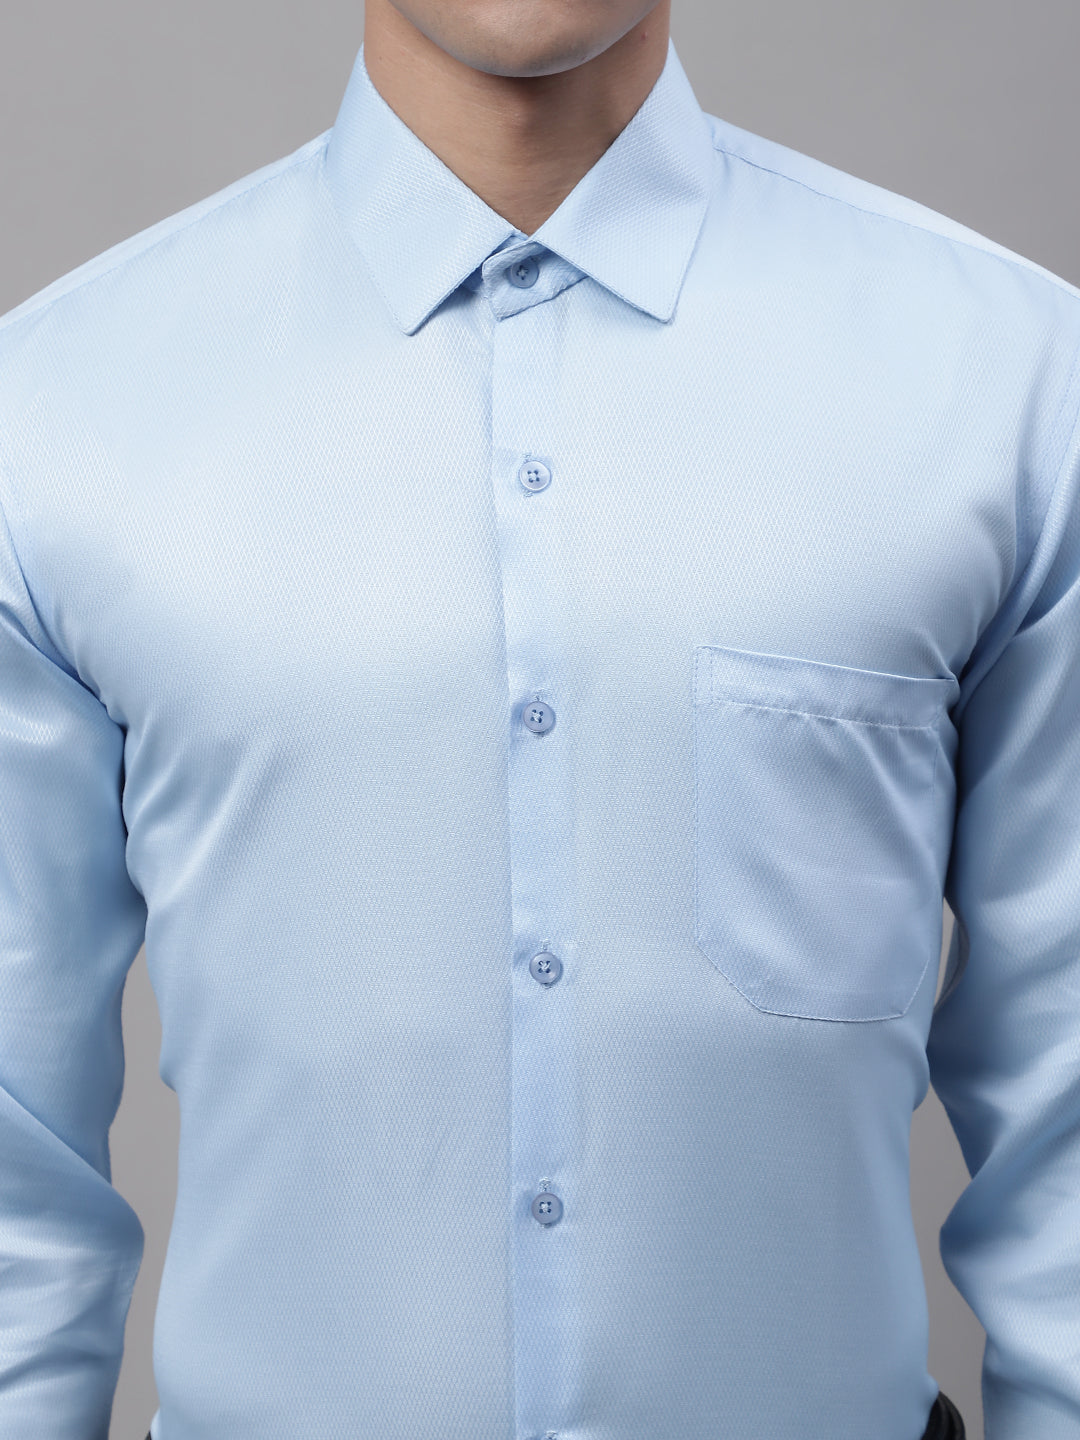 Men's Light-Blue Dobby Textured Formal Shirt